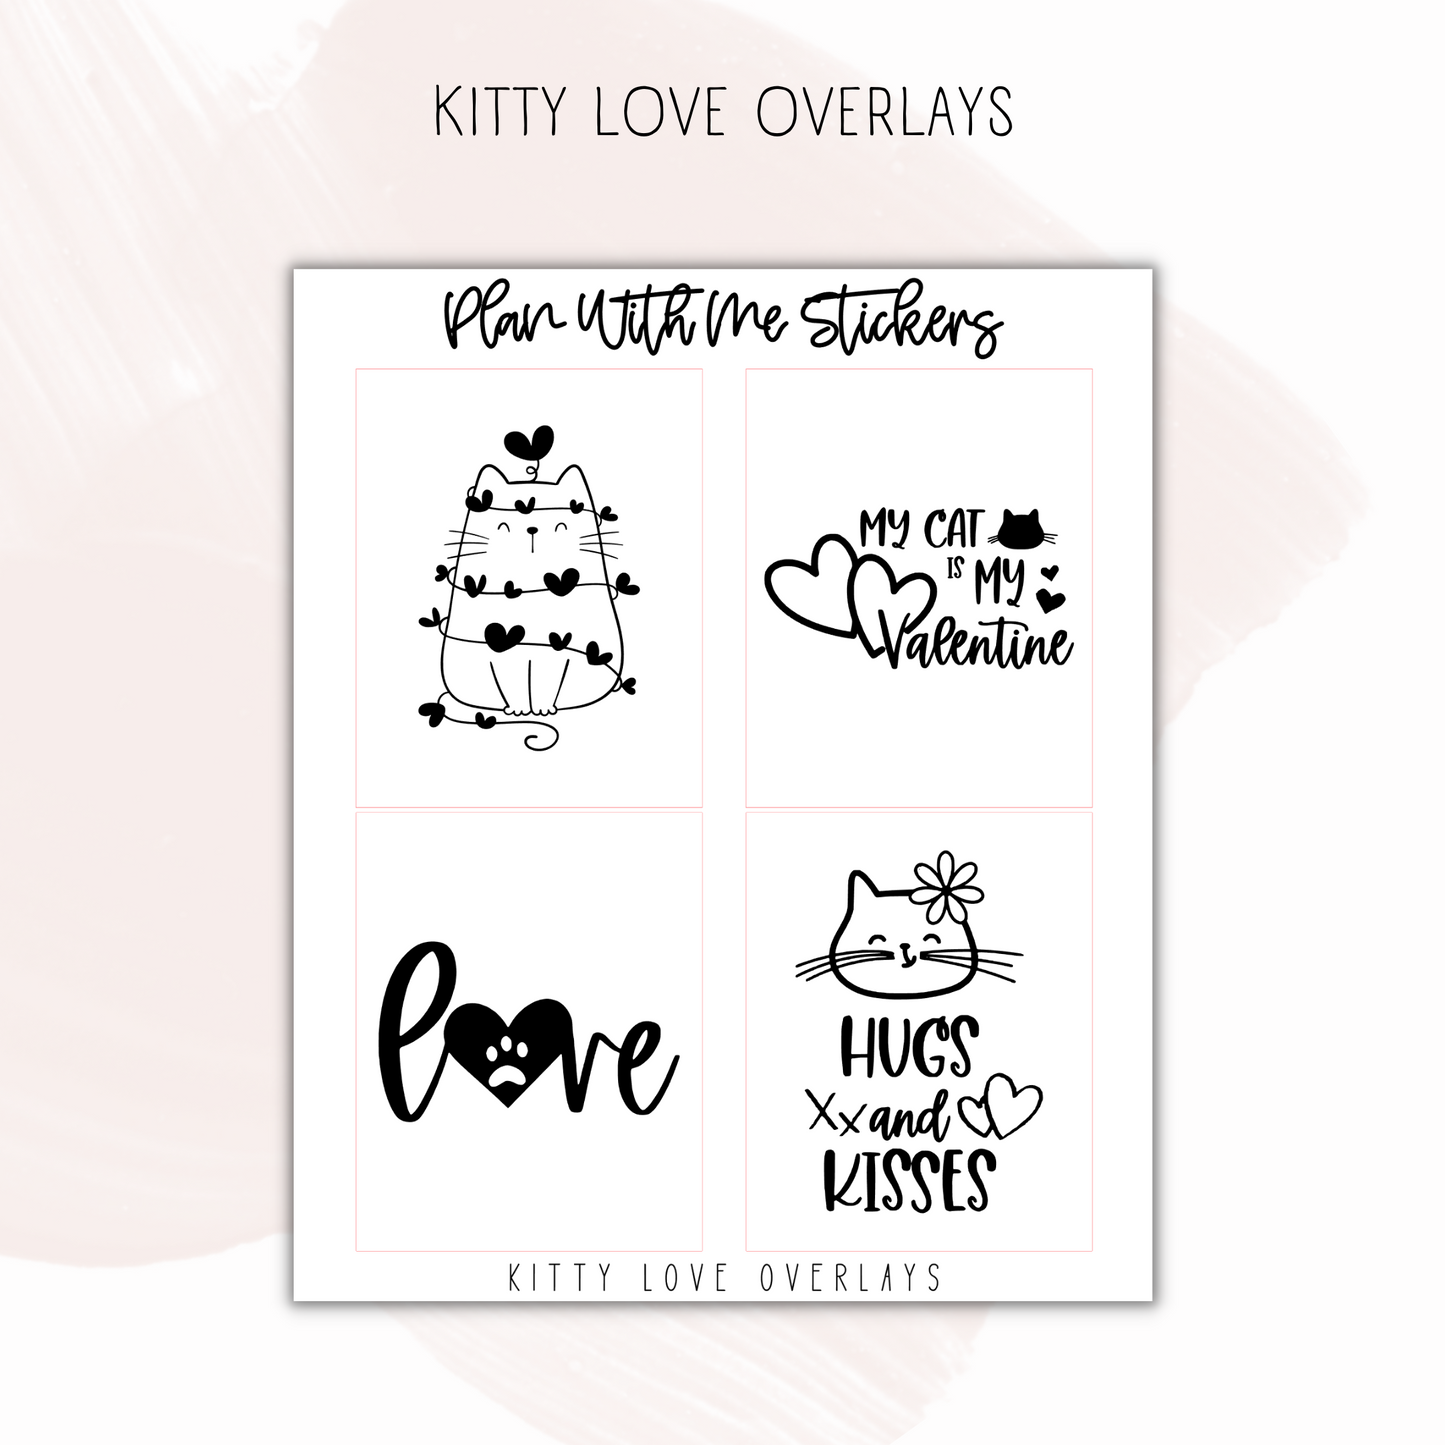 Kitty Love Overlays